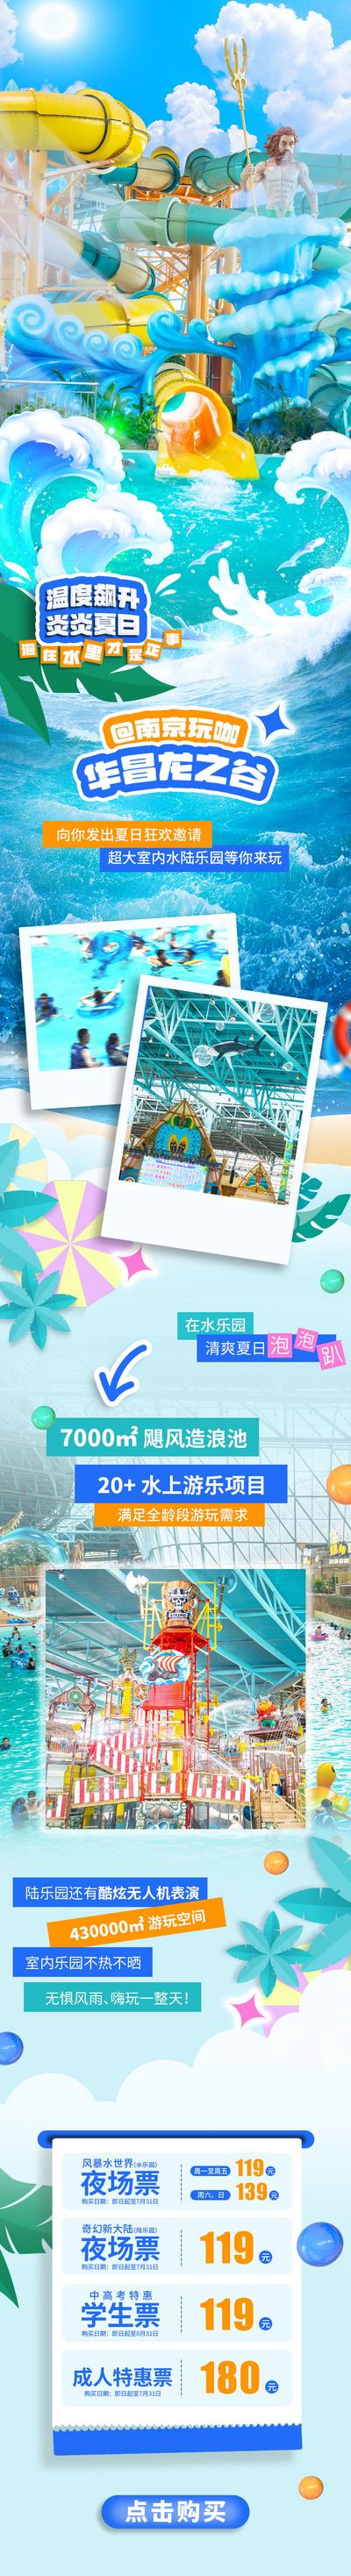 南门网 广告 专题 游乐园 水上乐园 夏日 狂欢 玩水 潮流 游乐项目 优惠票 长图